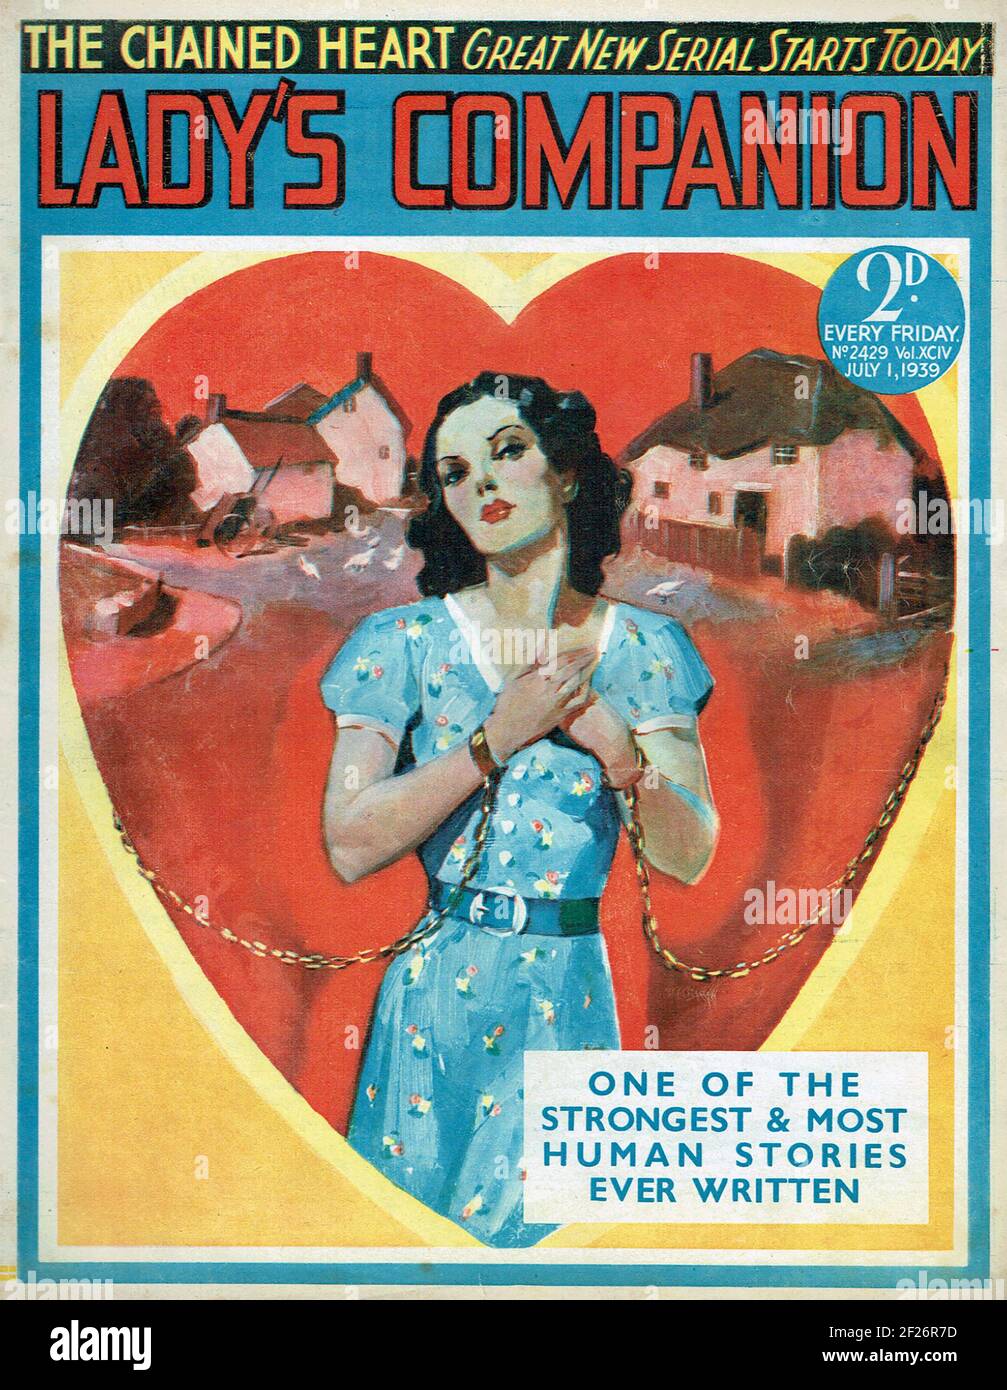 LADY'S COMPANION 1 luglio 1939 edizione delle donne inglesi rivista Foto Stock